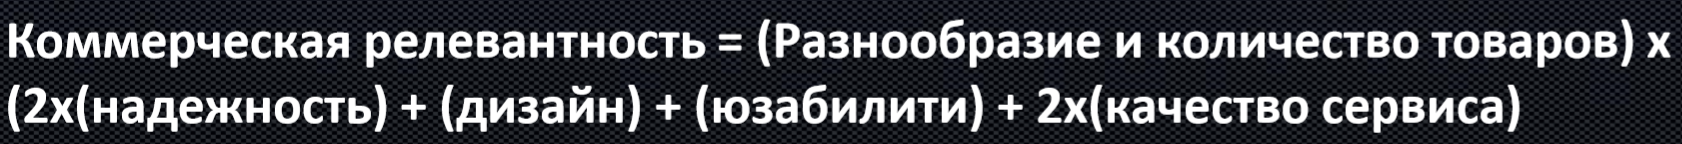 Формула коммерческой релевантности в Яндексе